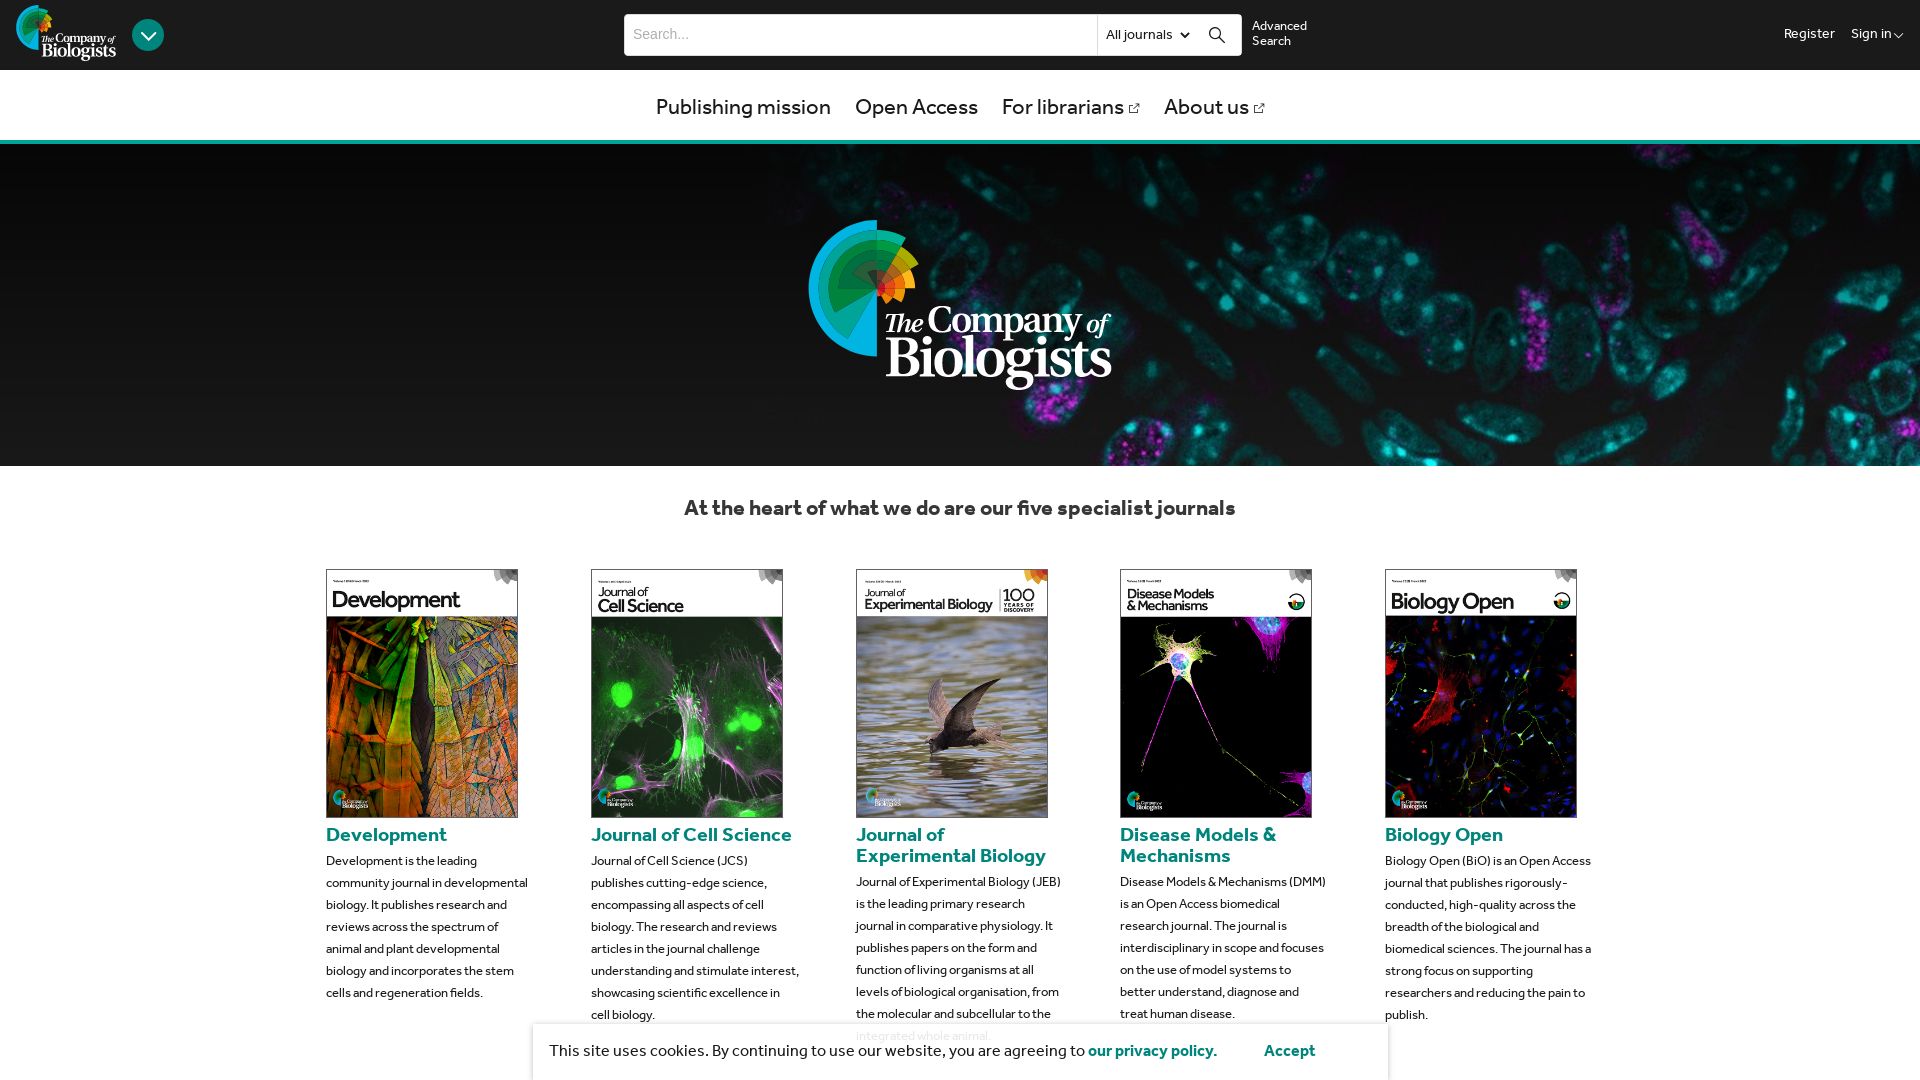 Website status journals.biologists.com is   ONLINE